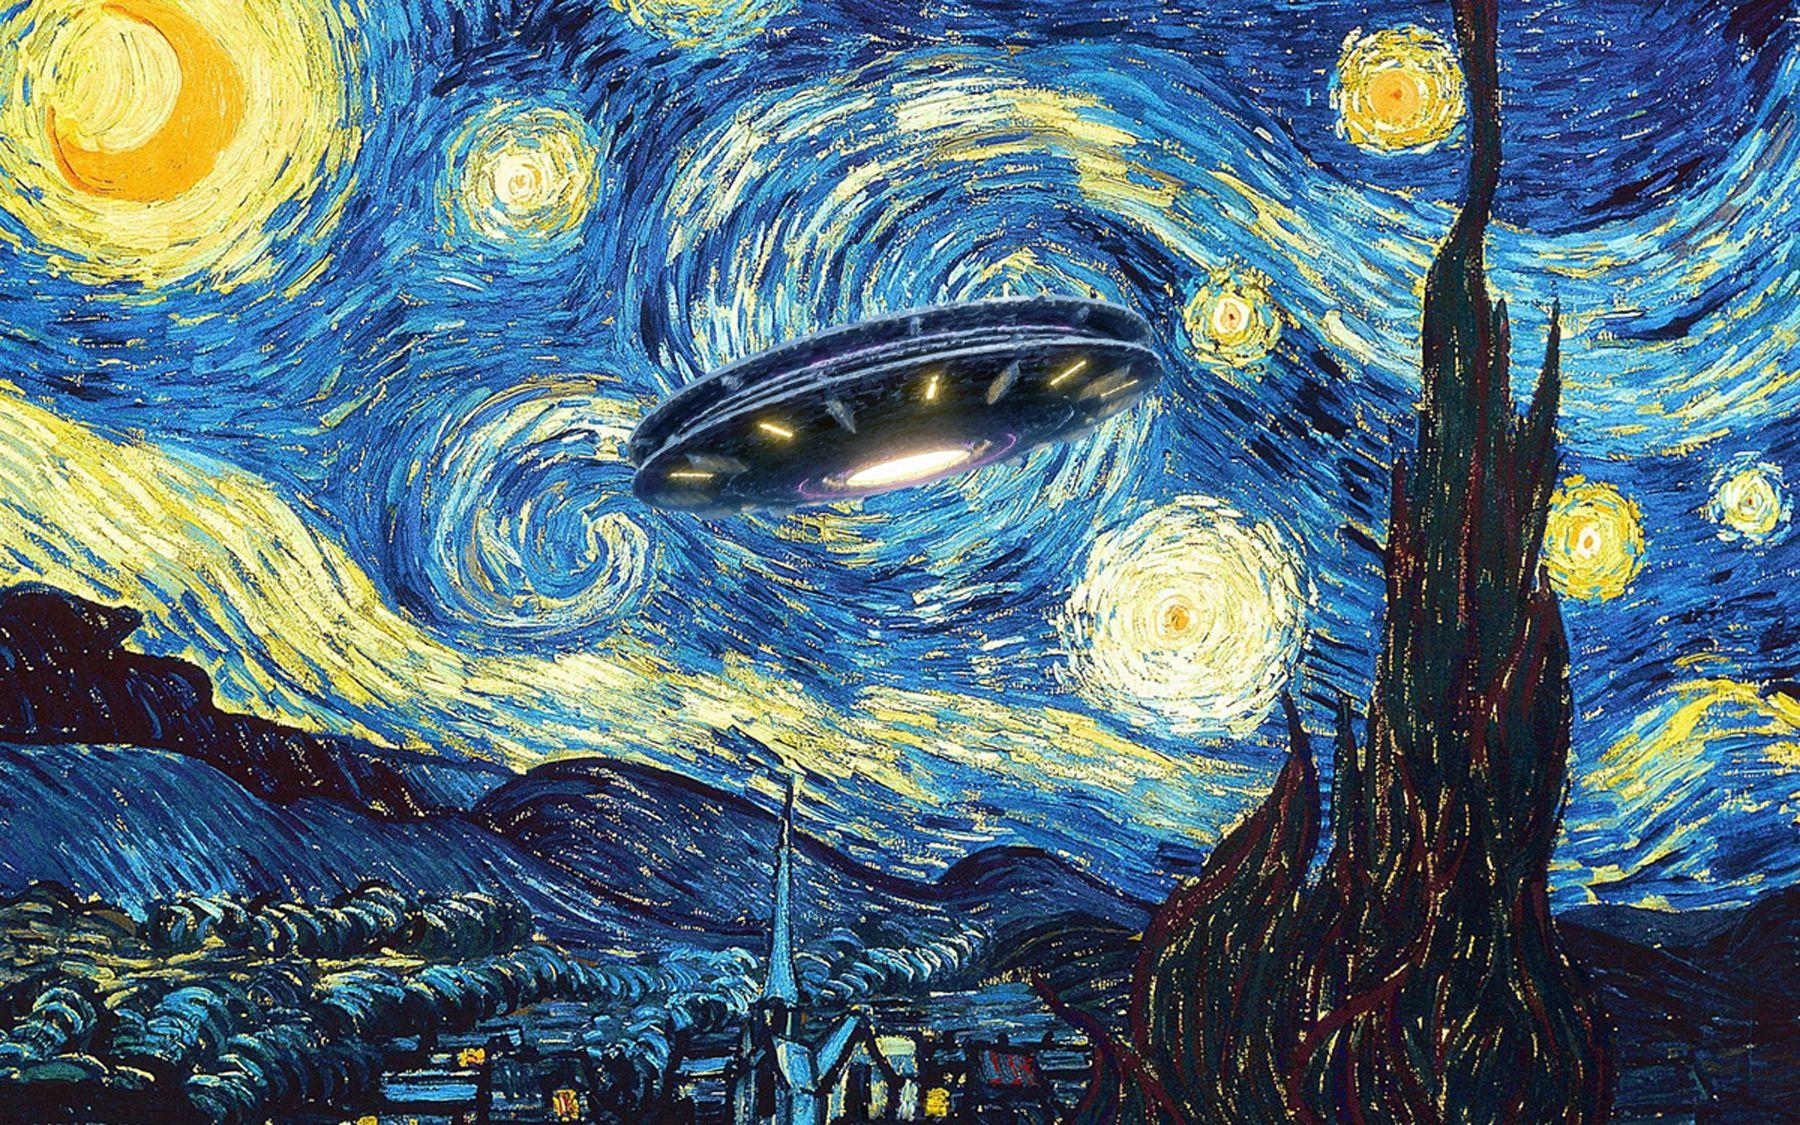 UFO Alien Abduction Starry Night Van Gogh Painting, Mixed Media on Canvas - Mixed Media Art by Tony Rubino